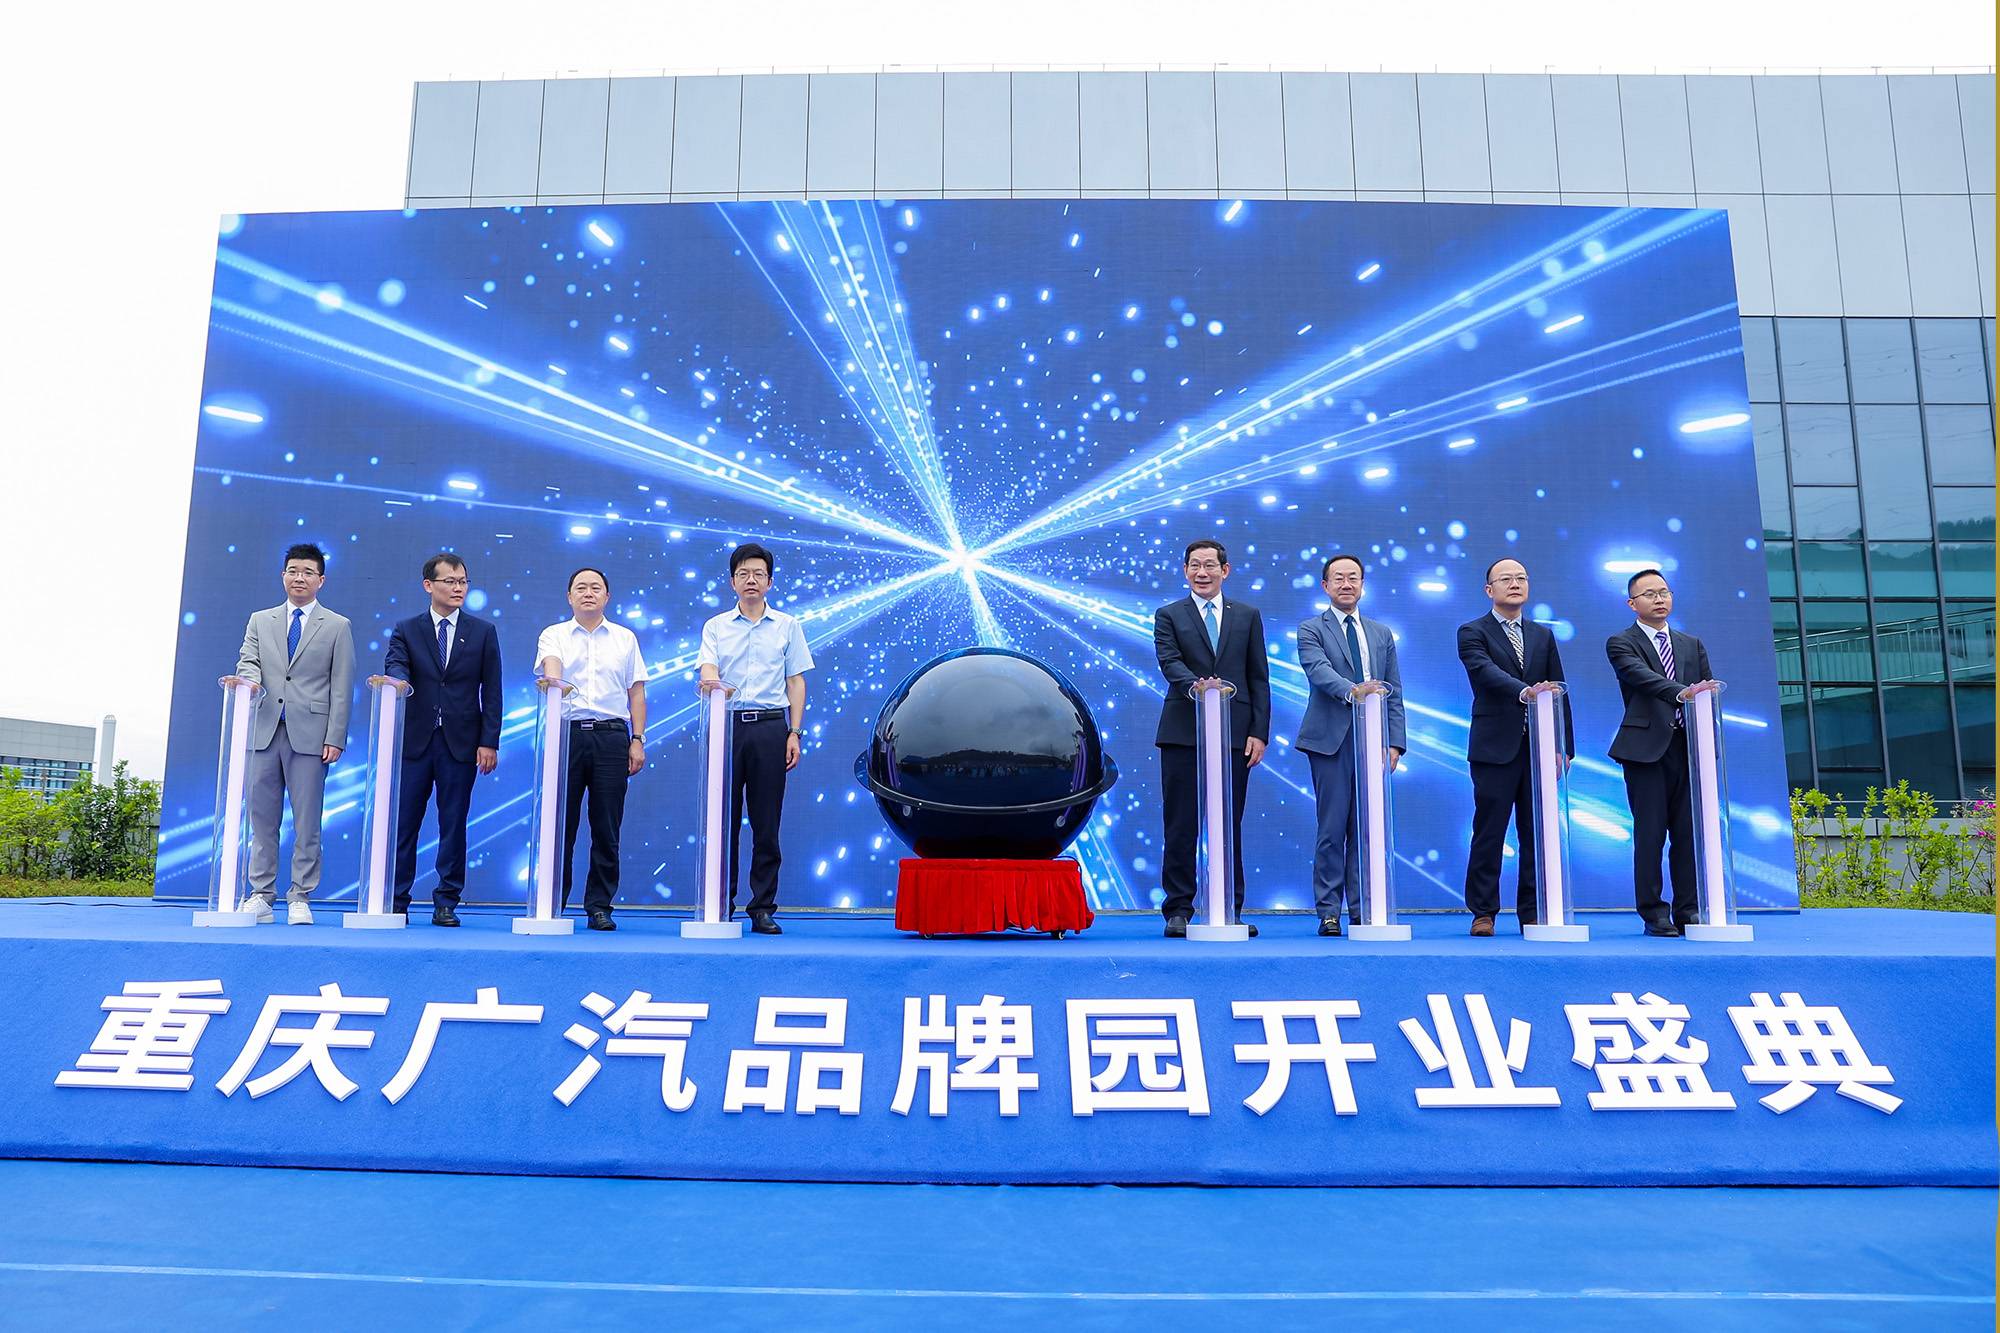 聚势而为 打造汽车销售新模式 重庆广汽品牌园开业